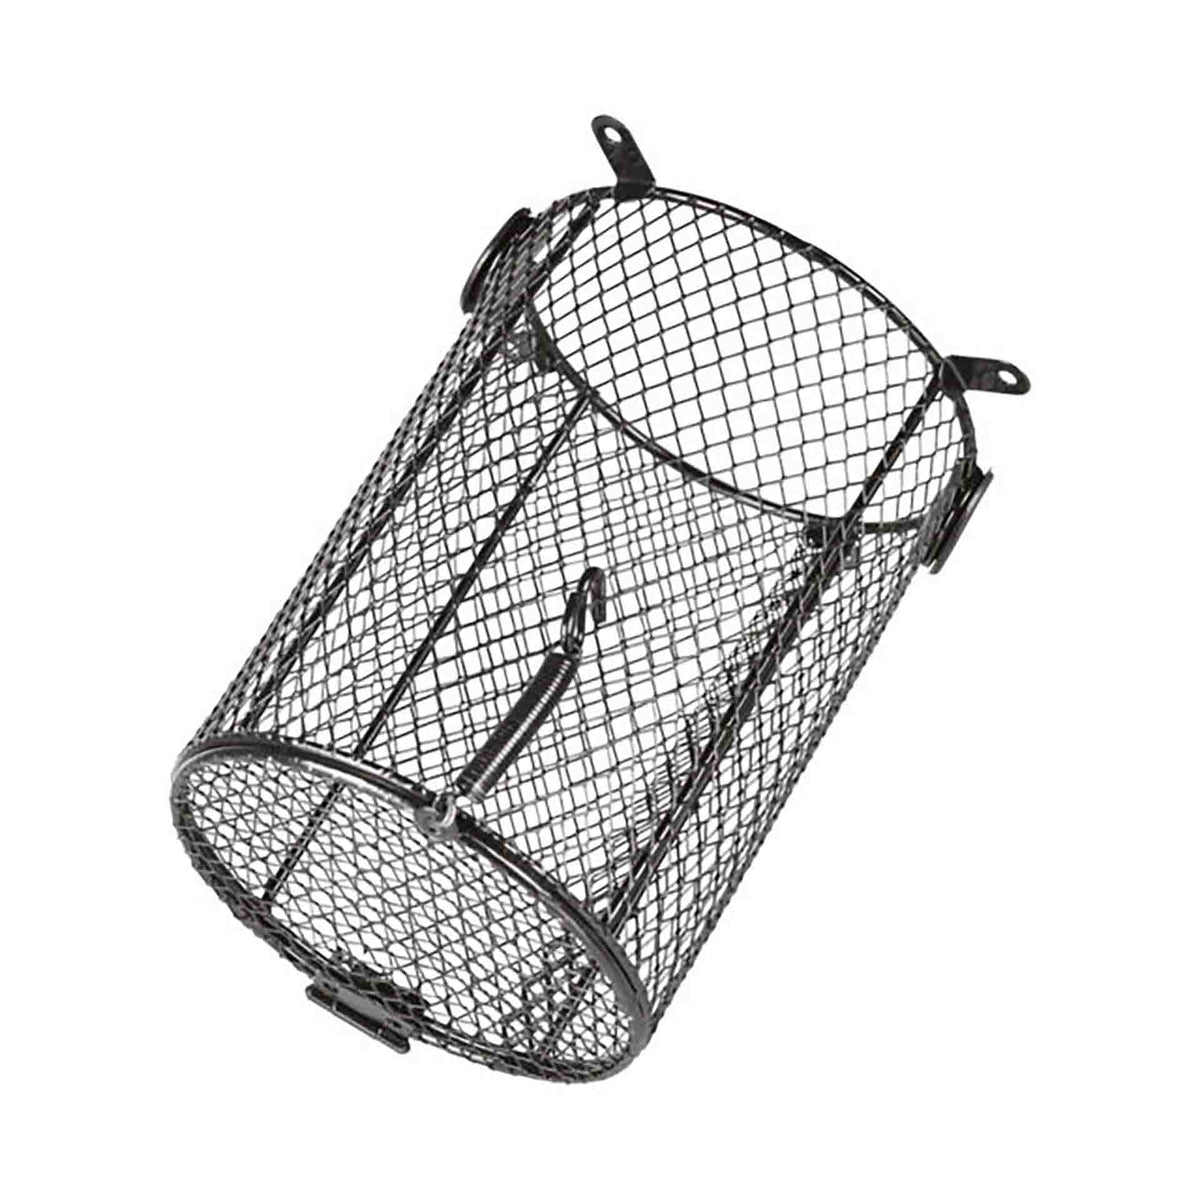 Trixie Protective Cage for Terrarium lamps - 12 x 16cm